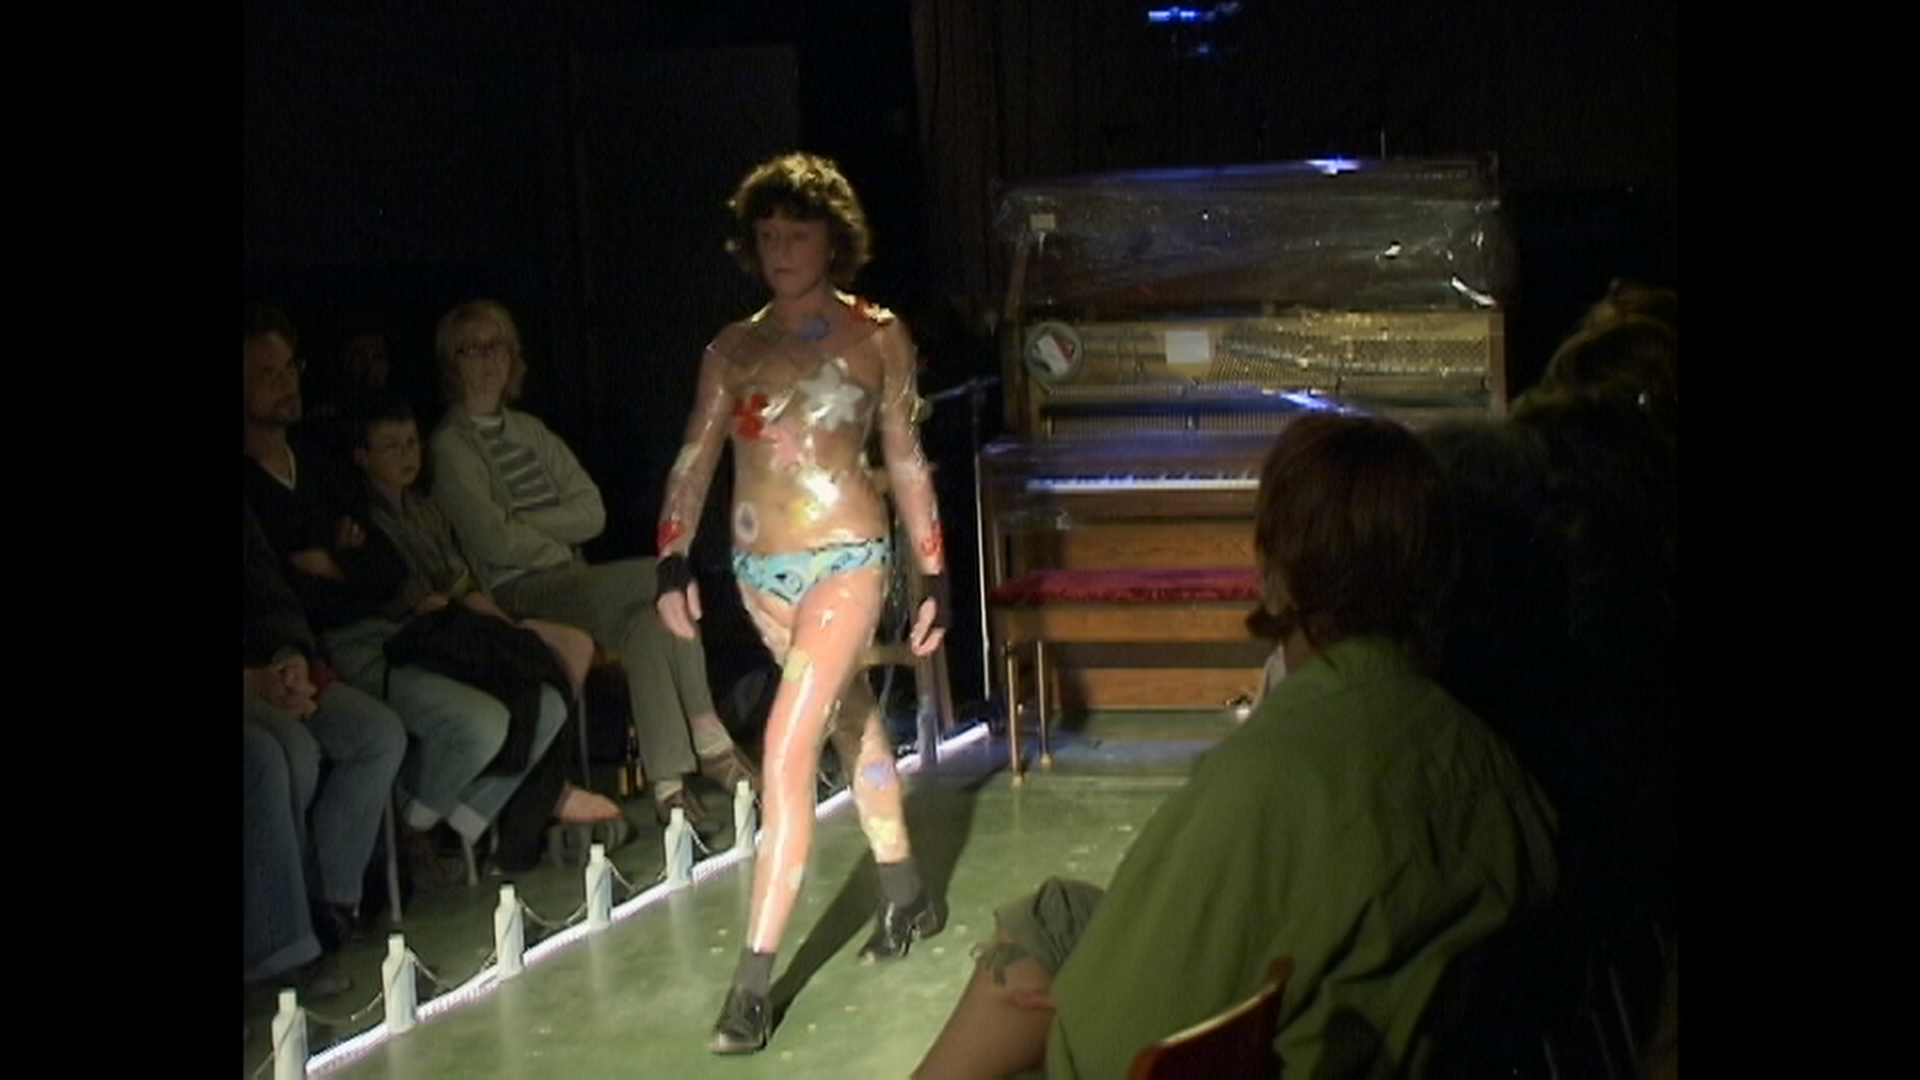 Image extraite du film « Chroniques hospitalières », une femme en sous-vêtements enveloppée de pellicule alimentaire marchant sur un podium.